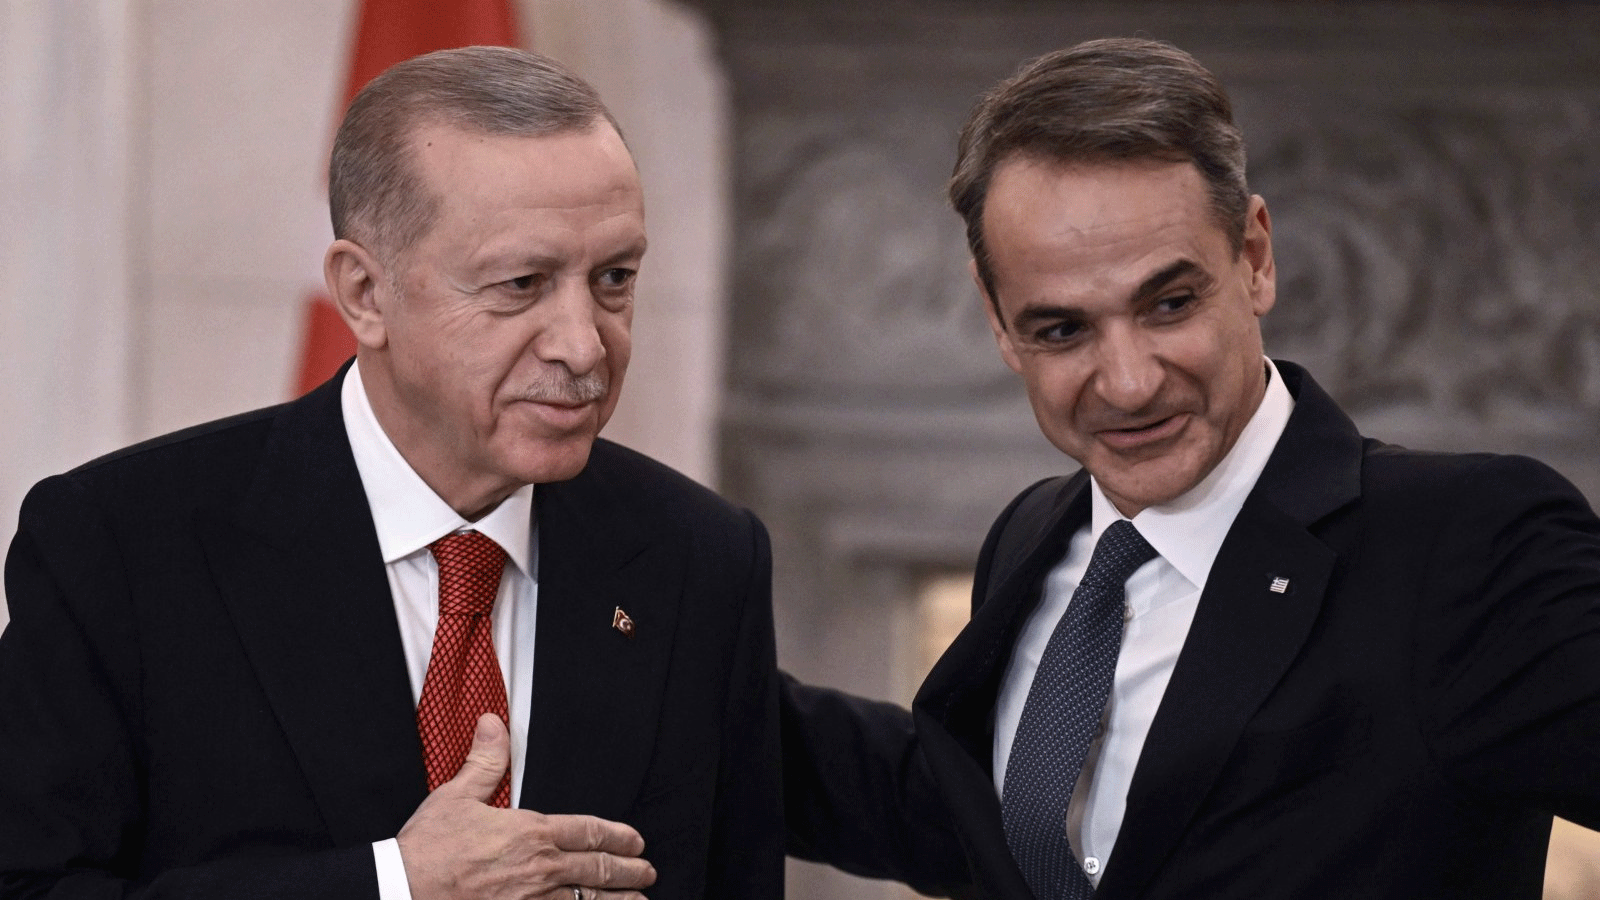 الرئيس التركي رجب طيب إردوغان (يسار) ورئيس الوزراء اليوناني كيرياكوس ميتسوتاكيس يغادران بعد التحدث إلى الصحافة عقب اجتماعهما في أثينا خلال زيارة إردوغان الرسمية إلى اليونان. 7 ديسمبر(كانون الاول) 2023